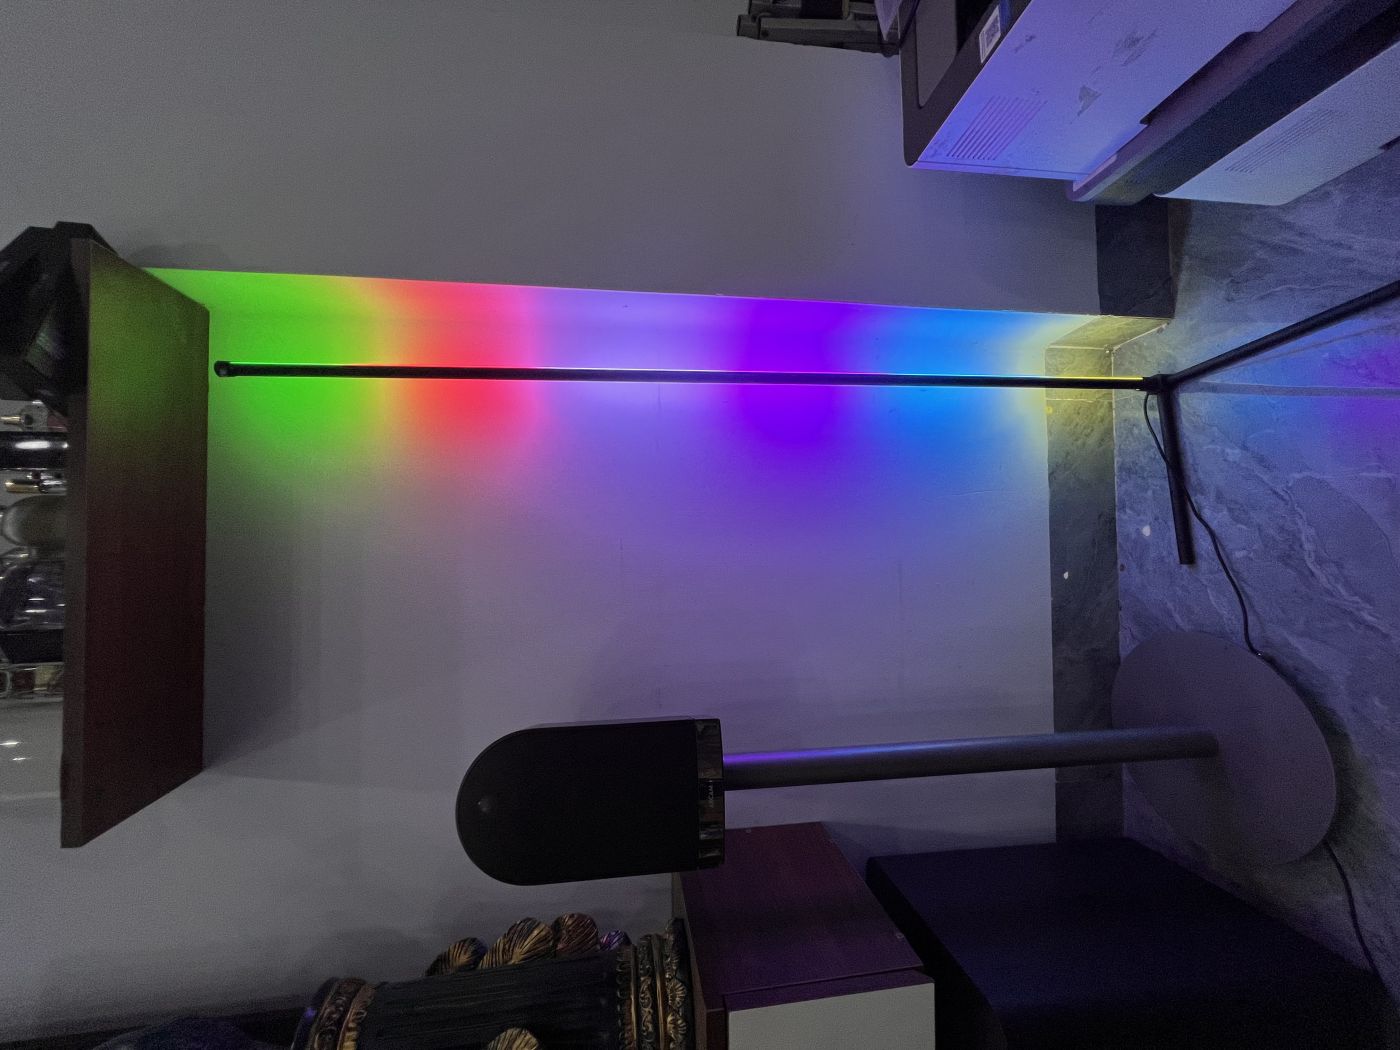 Đèn Led đứng góc tường ARGB lắp ghép dễ dàng trang trí phòng khách, phòng ngủ, phòng game